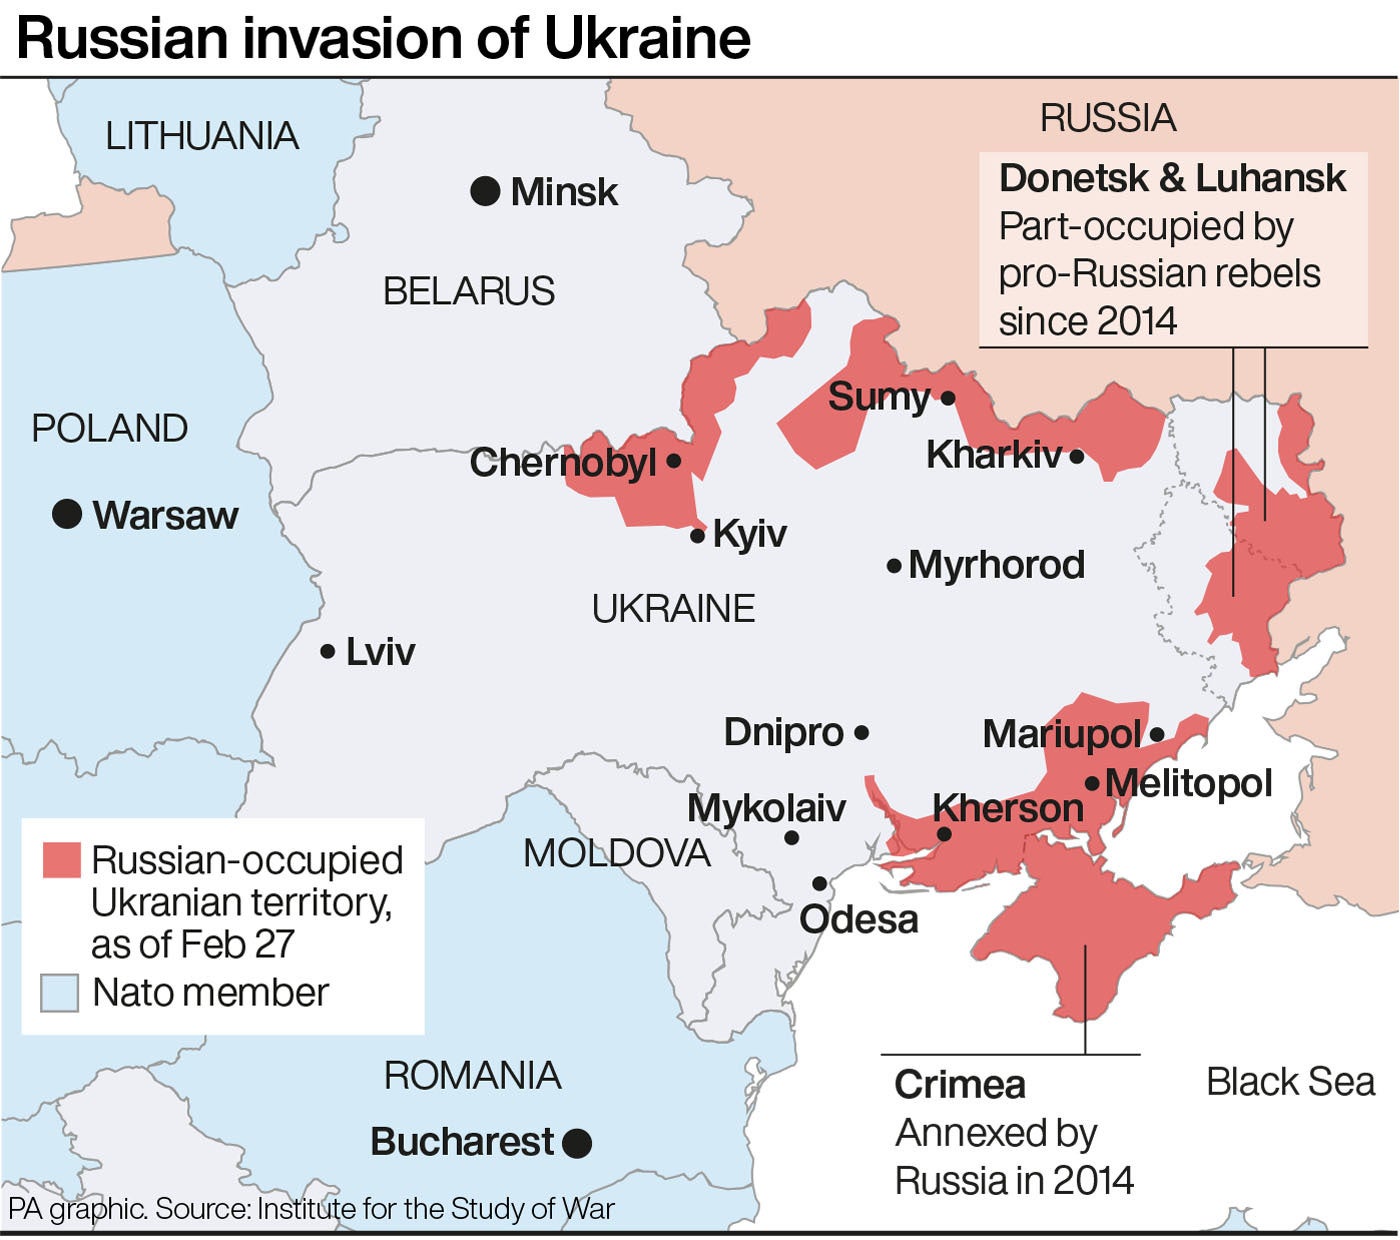 El mapa muestra el alcance de la invasión rusa a Ucrania